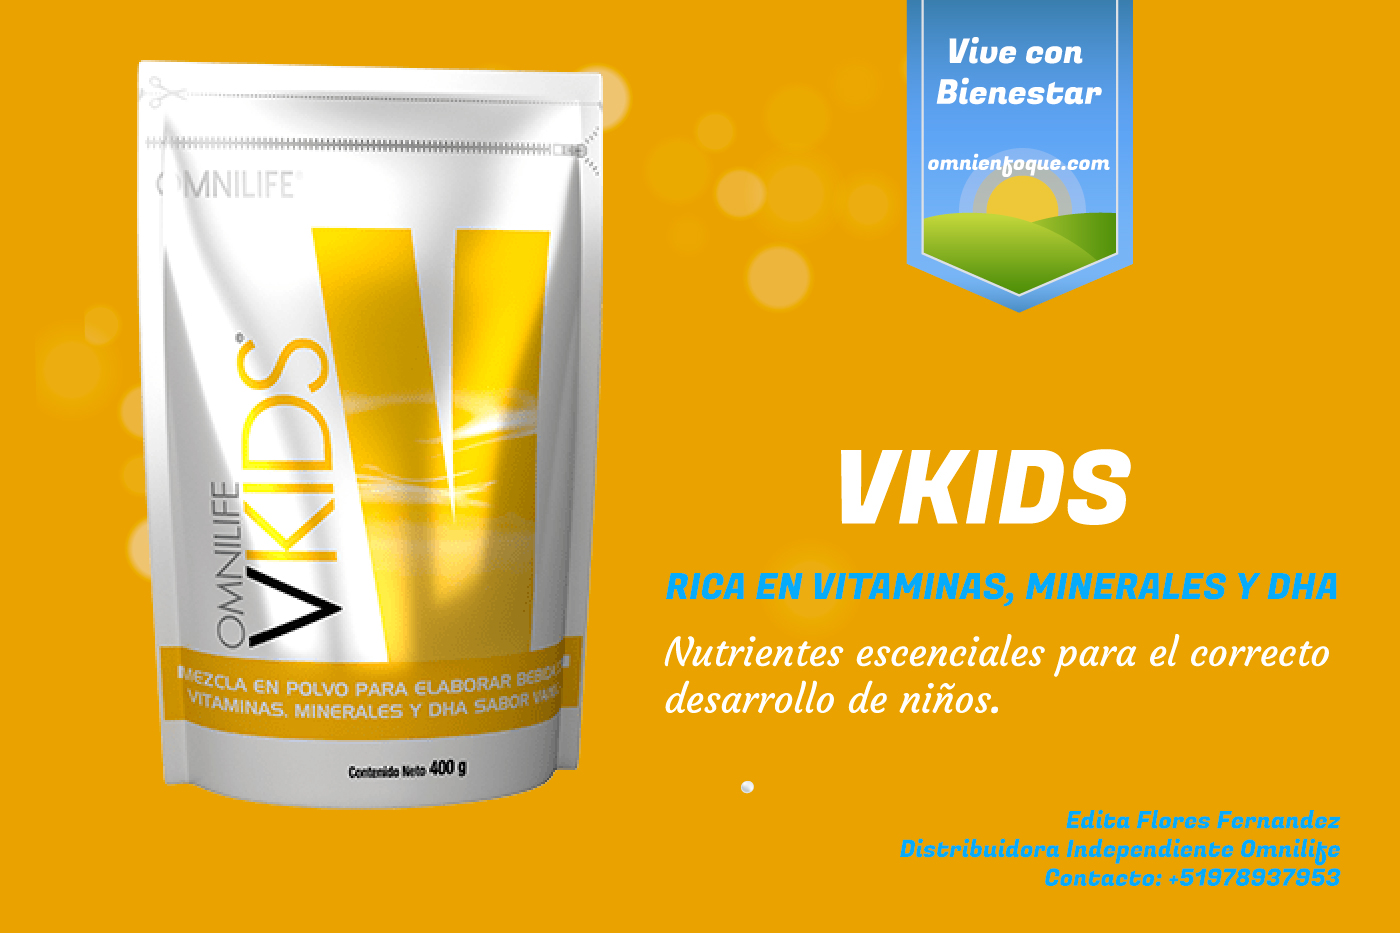 VKIDS de omnilife es una bebida rica en nutrientes esenciales para el desarrollo de los niños